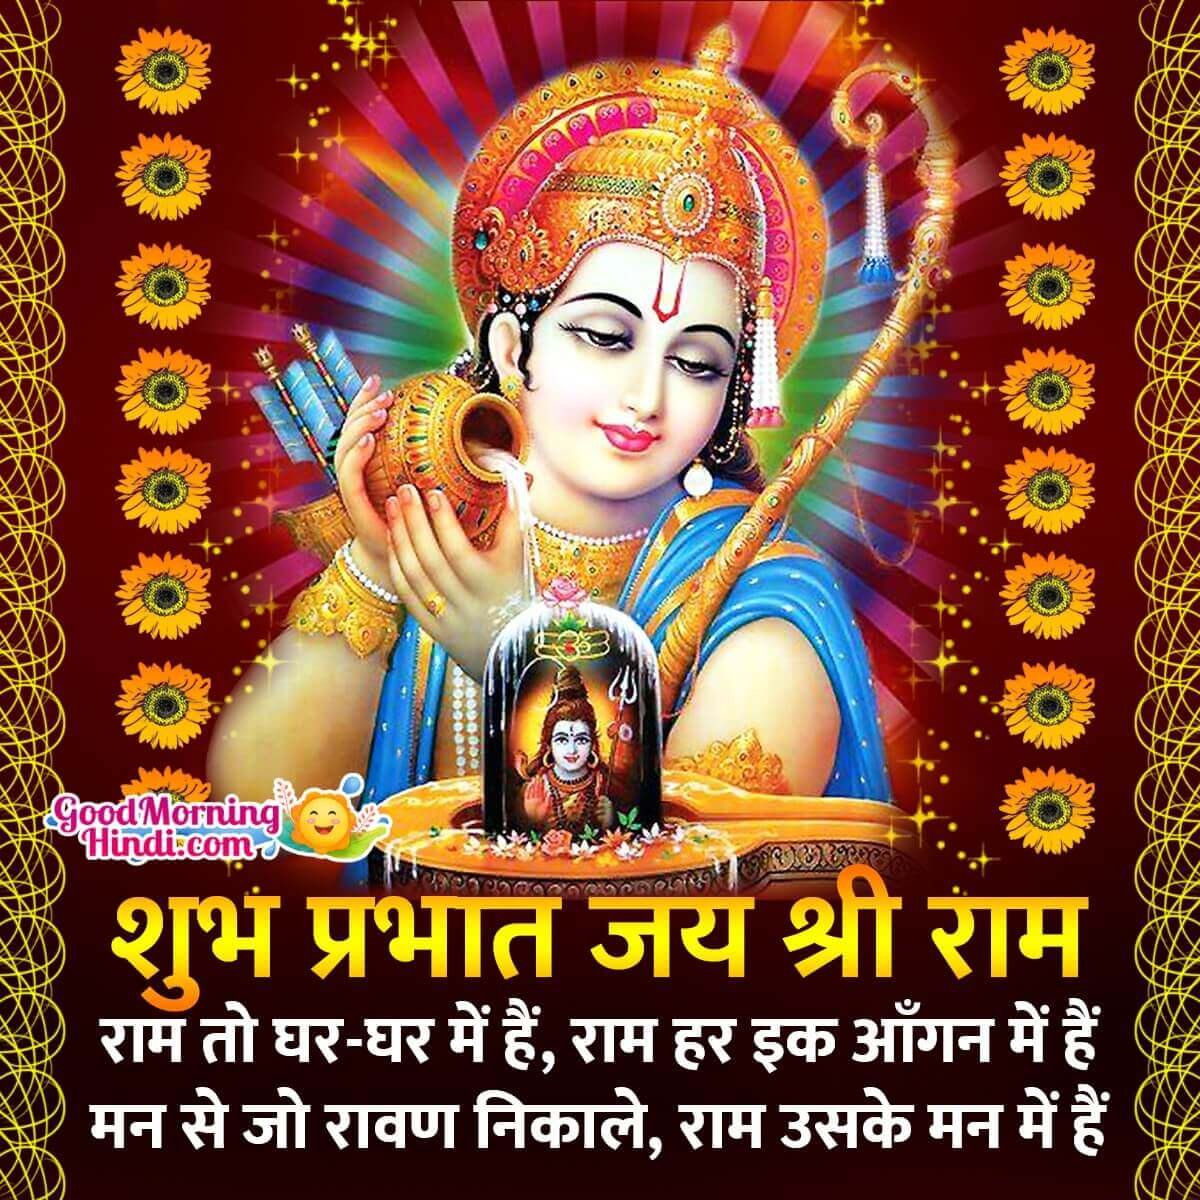 Good Morning Shri Ram Hindi Status Photo